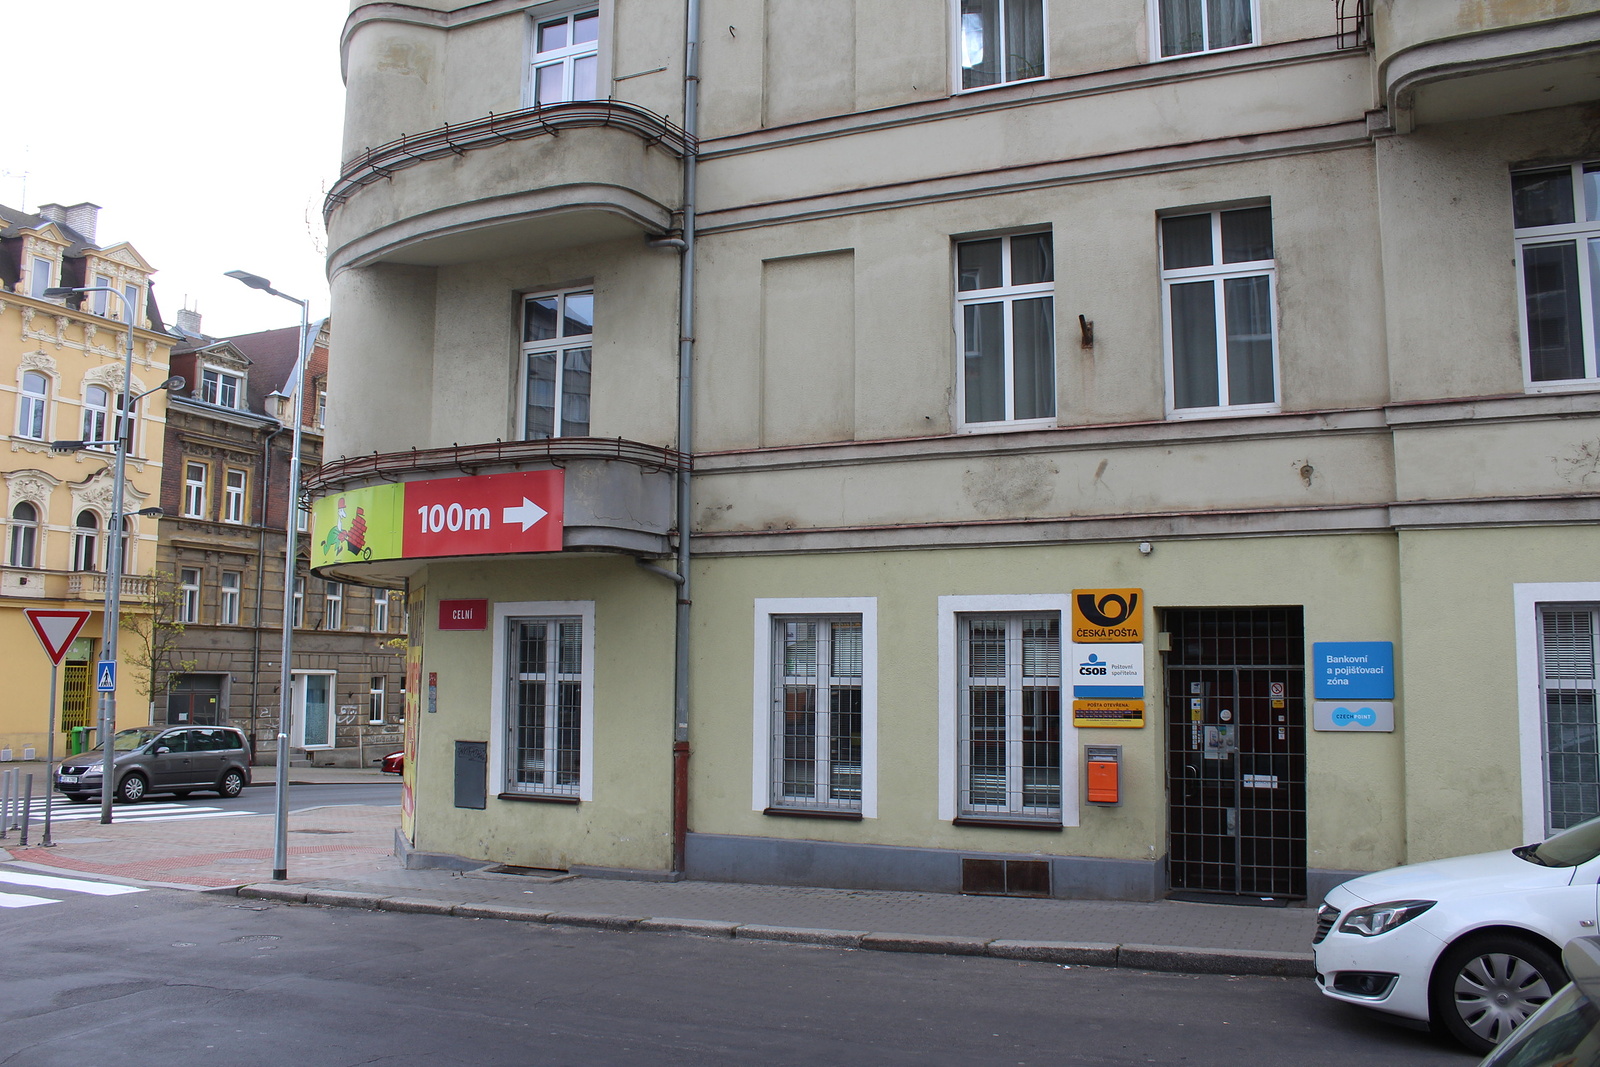 Hlavní pošta ve Varech by mohla sídlit v Tržnici. Rybáře vyhrály nad Doubím  - Karlovarský deník